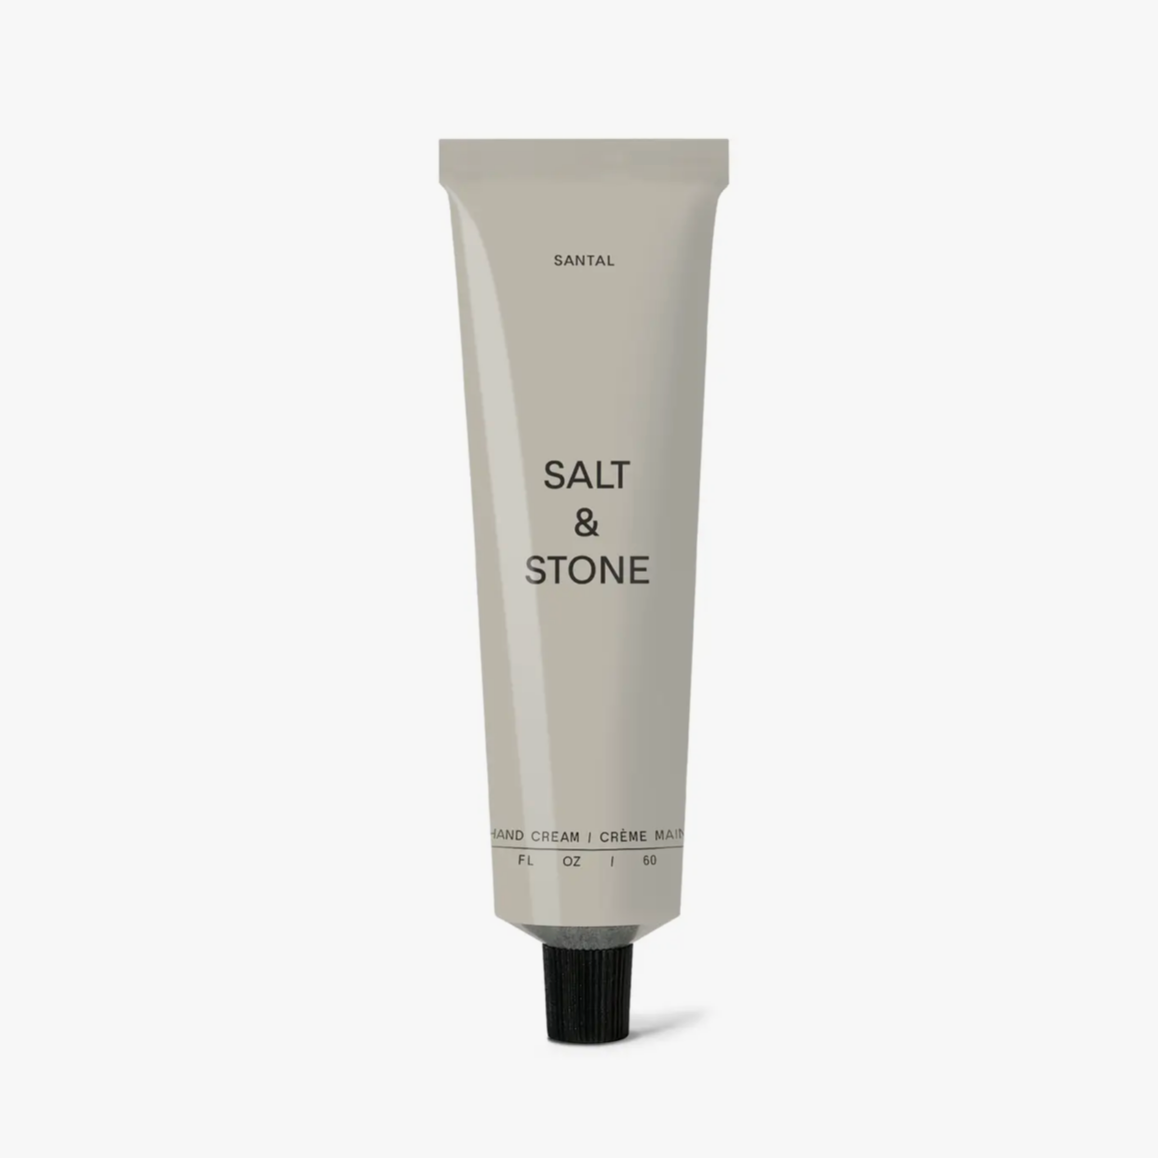 Salt & Stone - Hand Cream - Santal